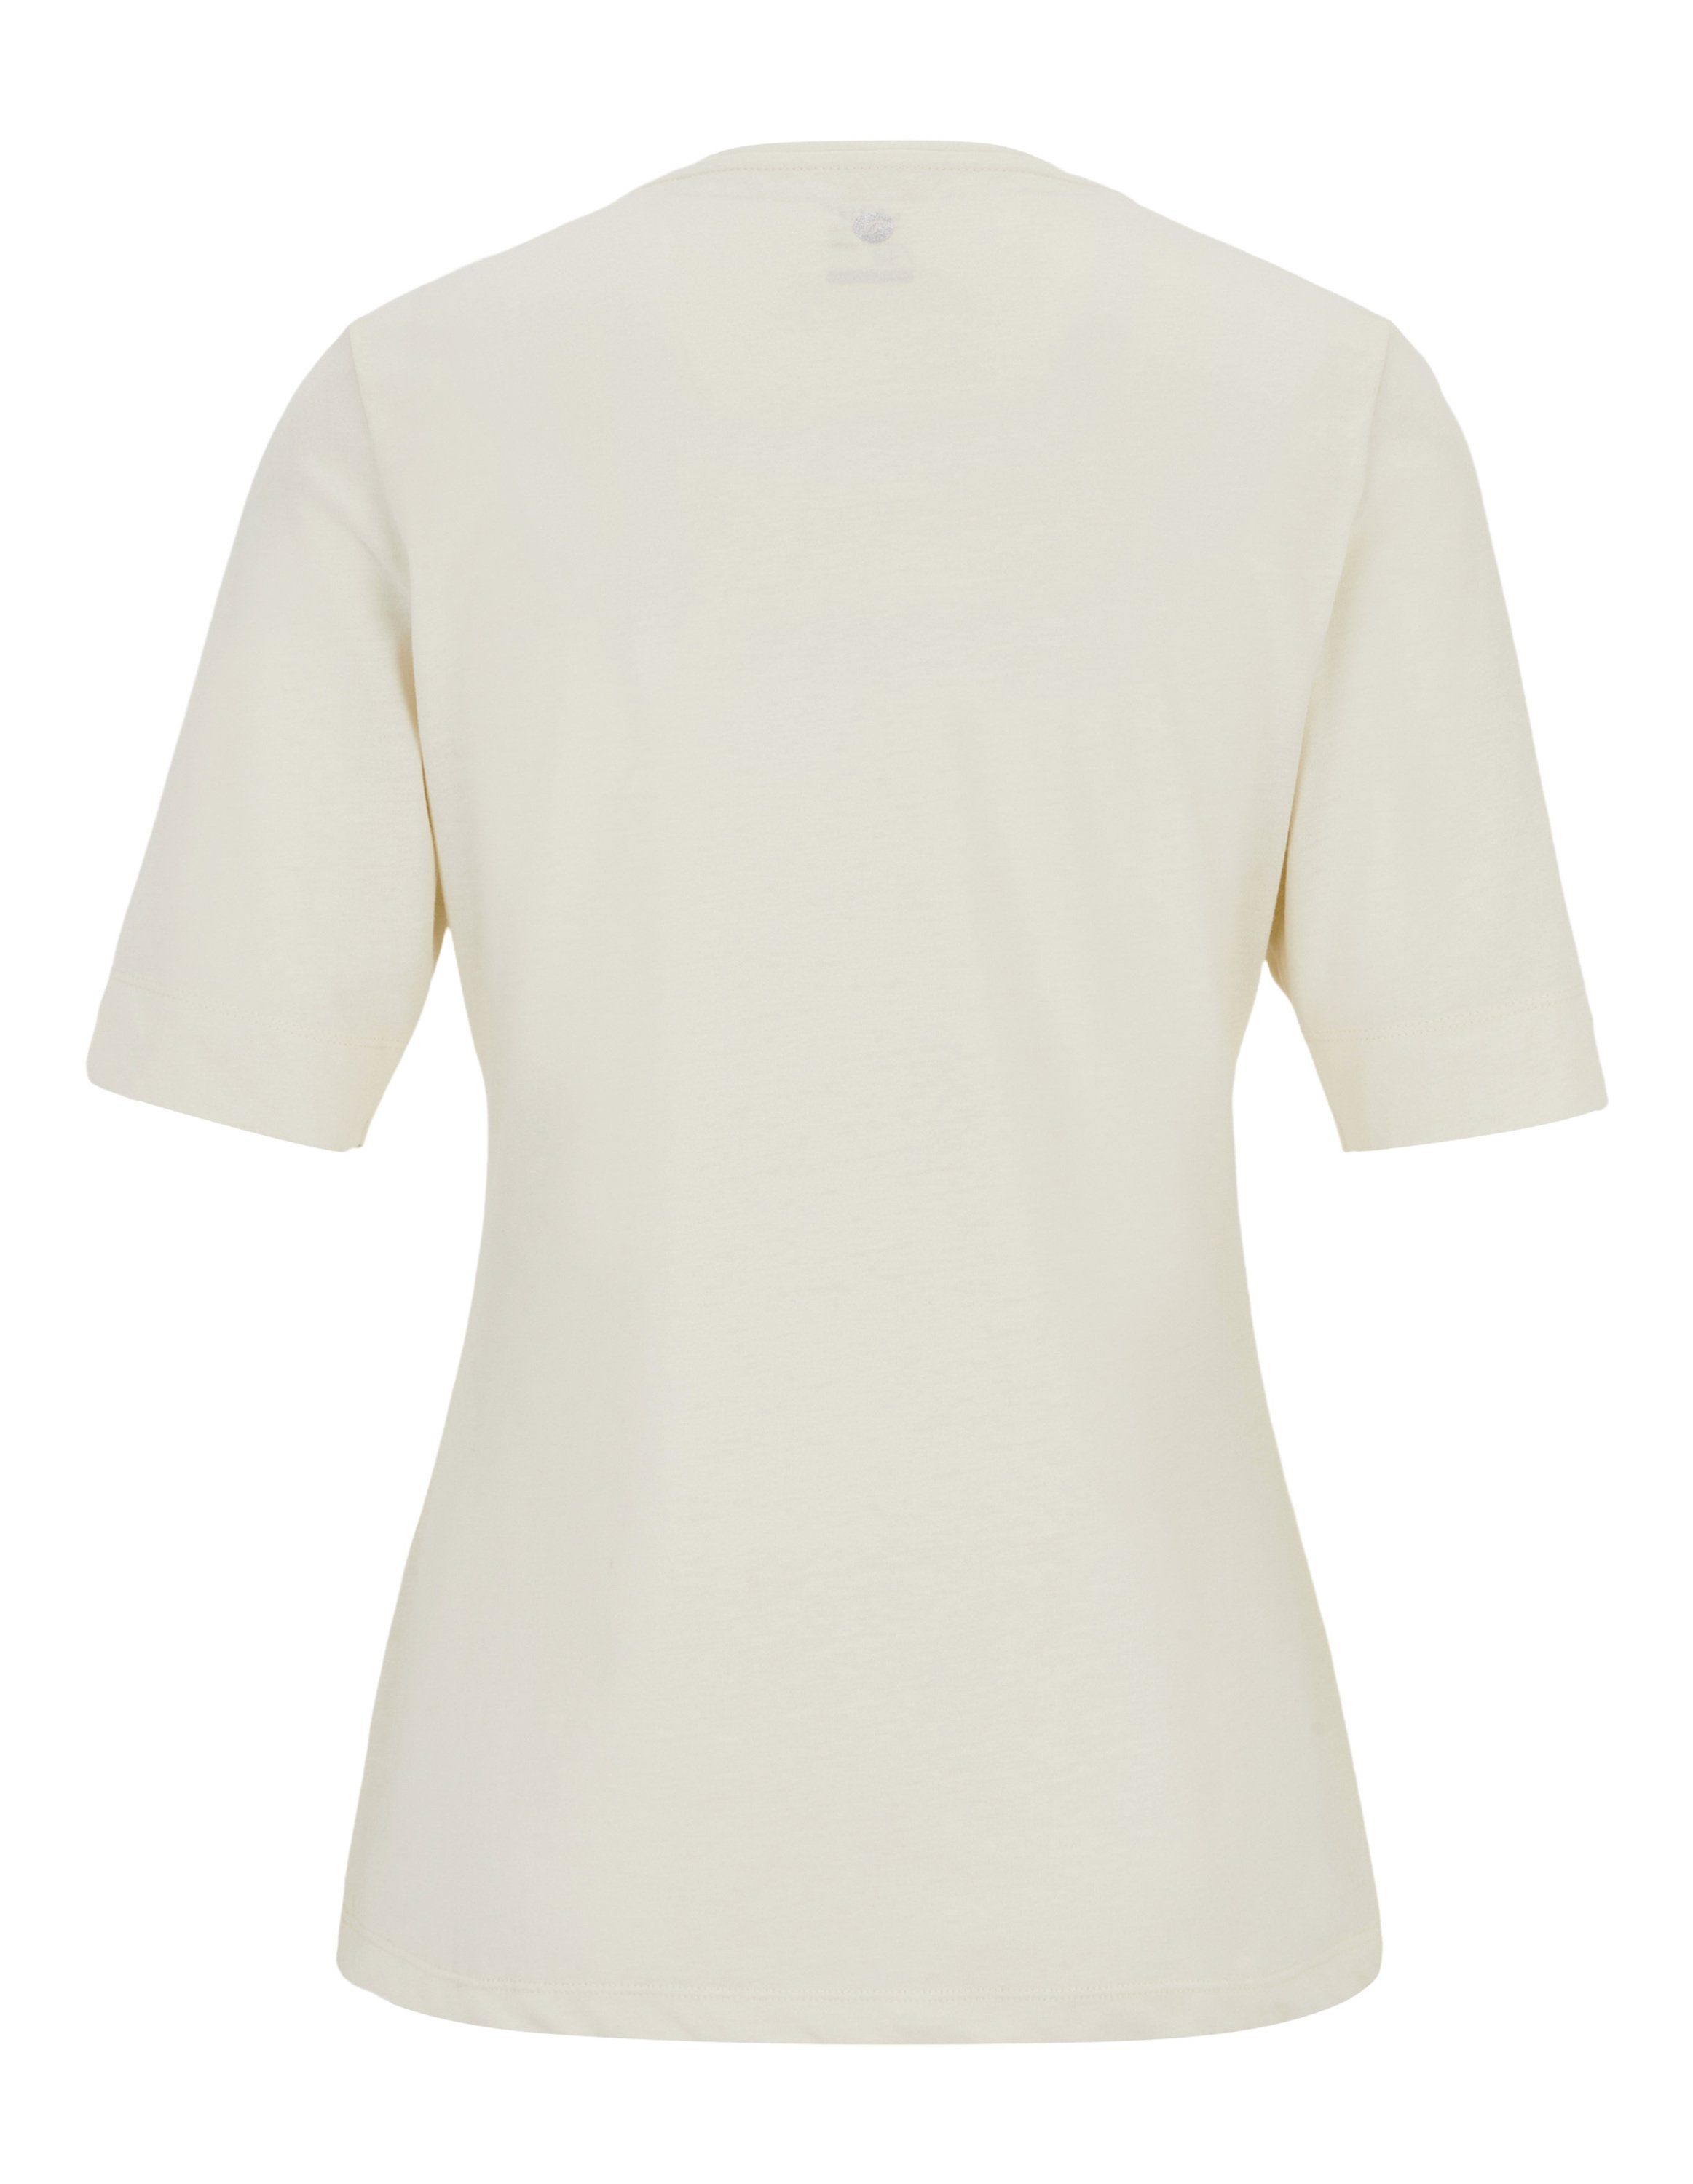 T-Shirt T-Shirt white Sportswear SABRINA Joy sand